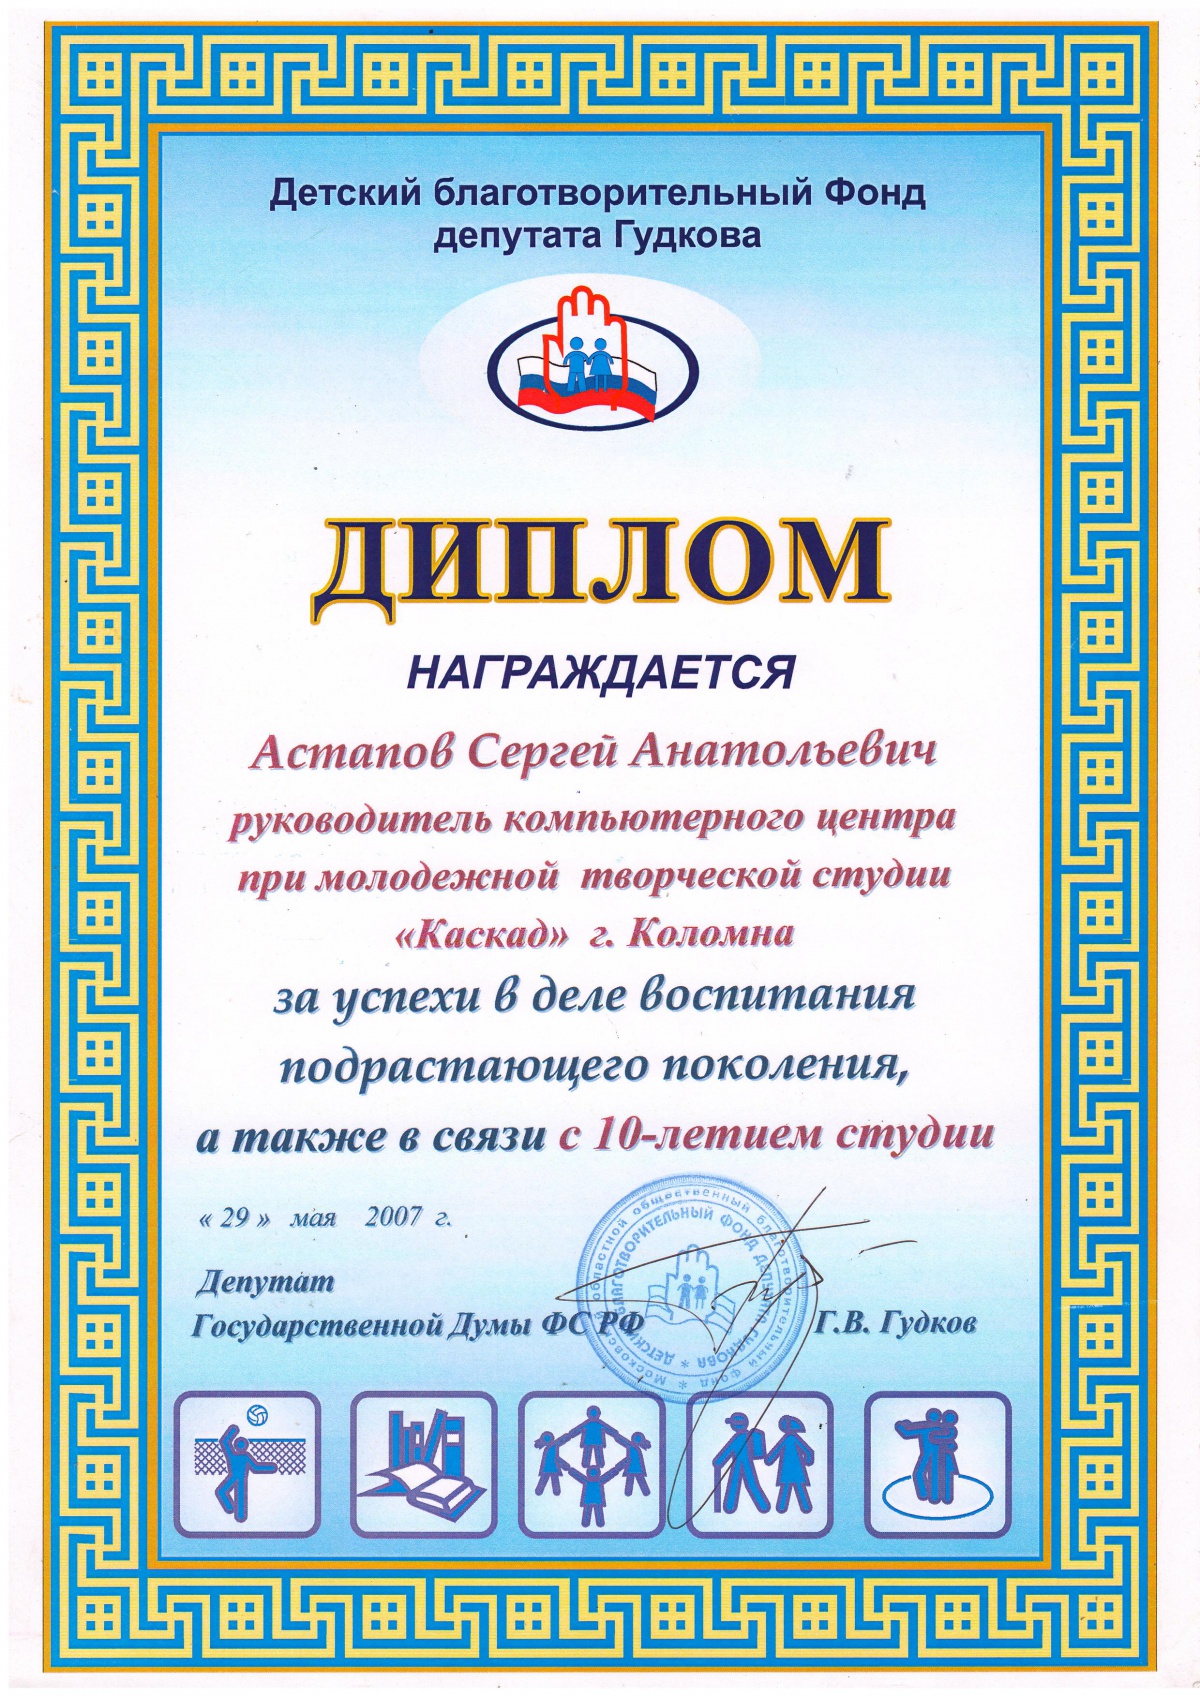 Диплом Детского благотворительного Фонда депутата Гудкова, дипломы организации, дипломы директору.